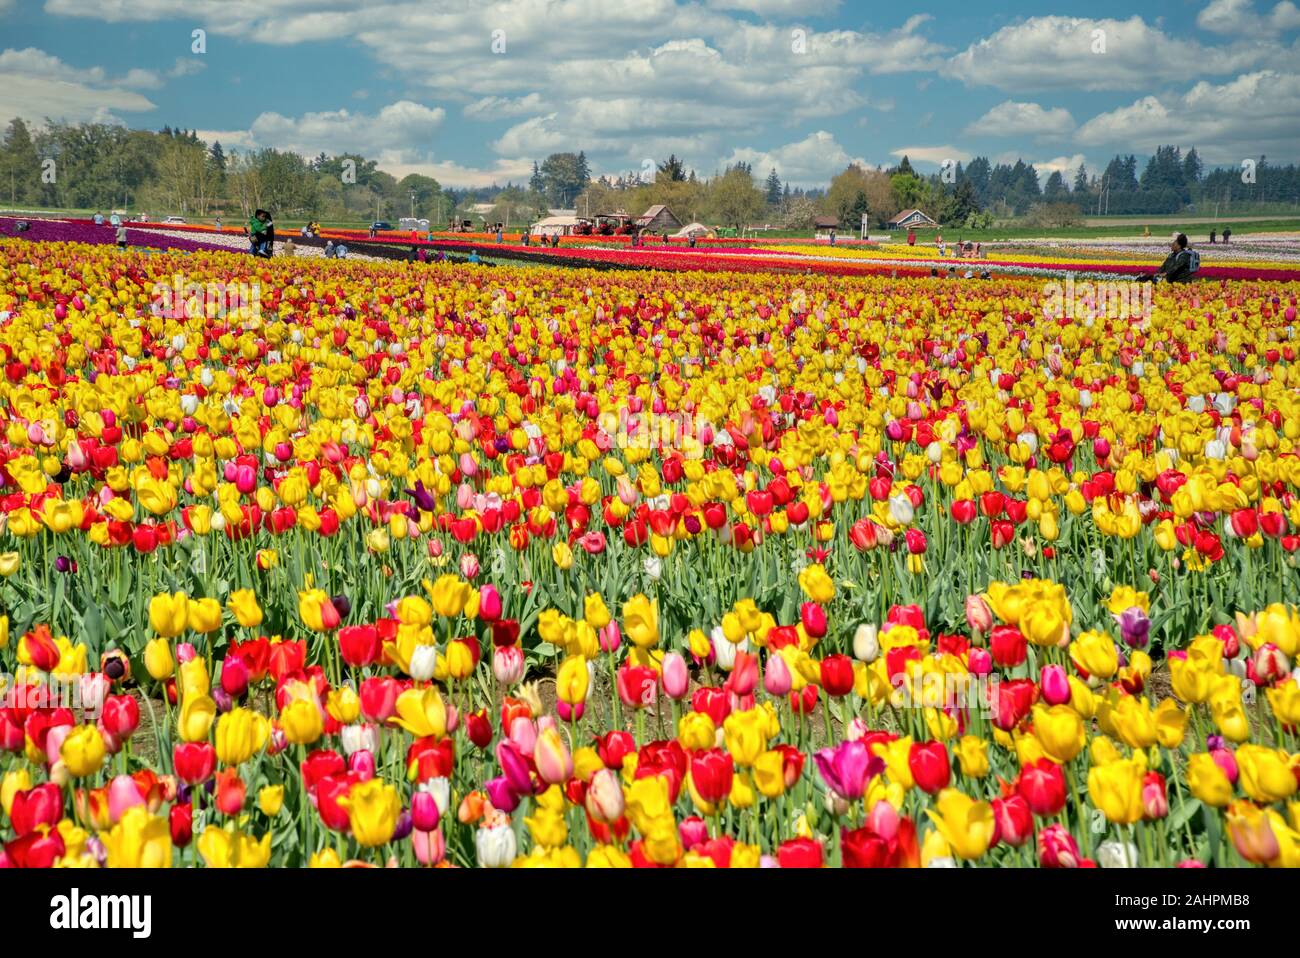 Die jährlichen Tulip Fest am Holzschuh Tulip Farm, in Woodburn, Oregon gelegen, wird am 20. März 2020 beginnen und in der ersten Woche im Mai. Stockfoto